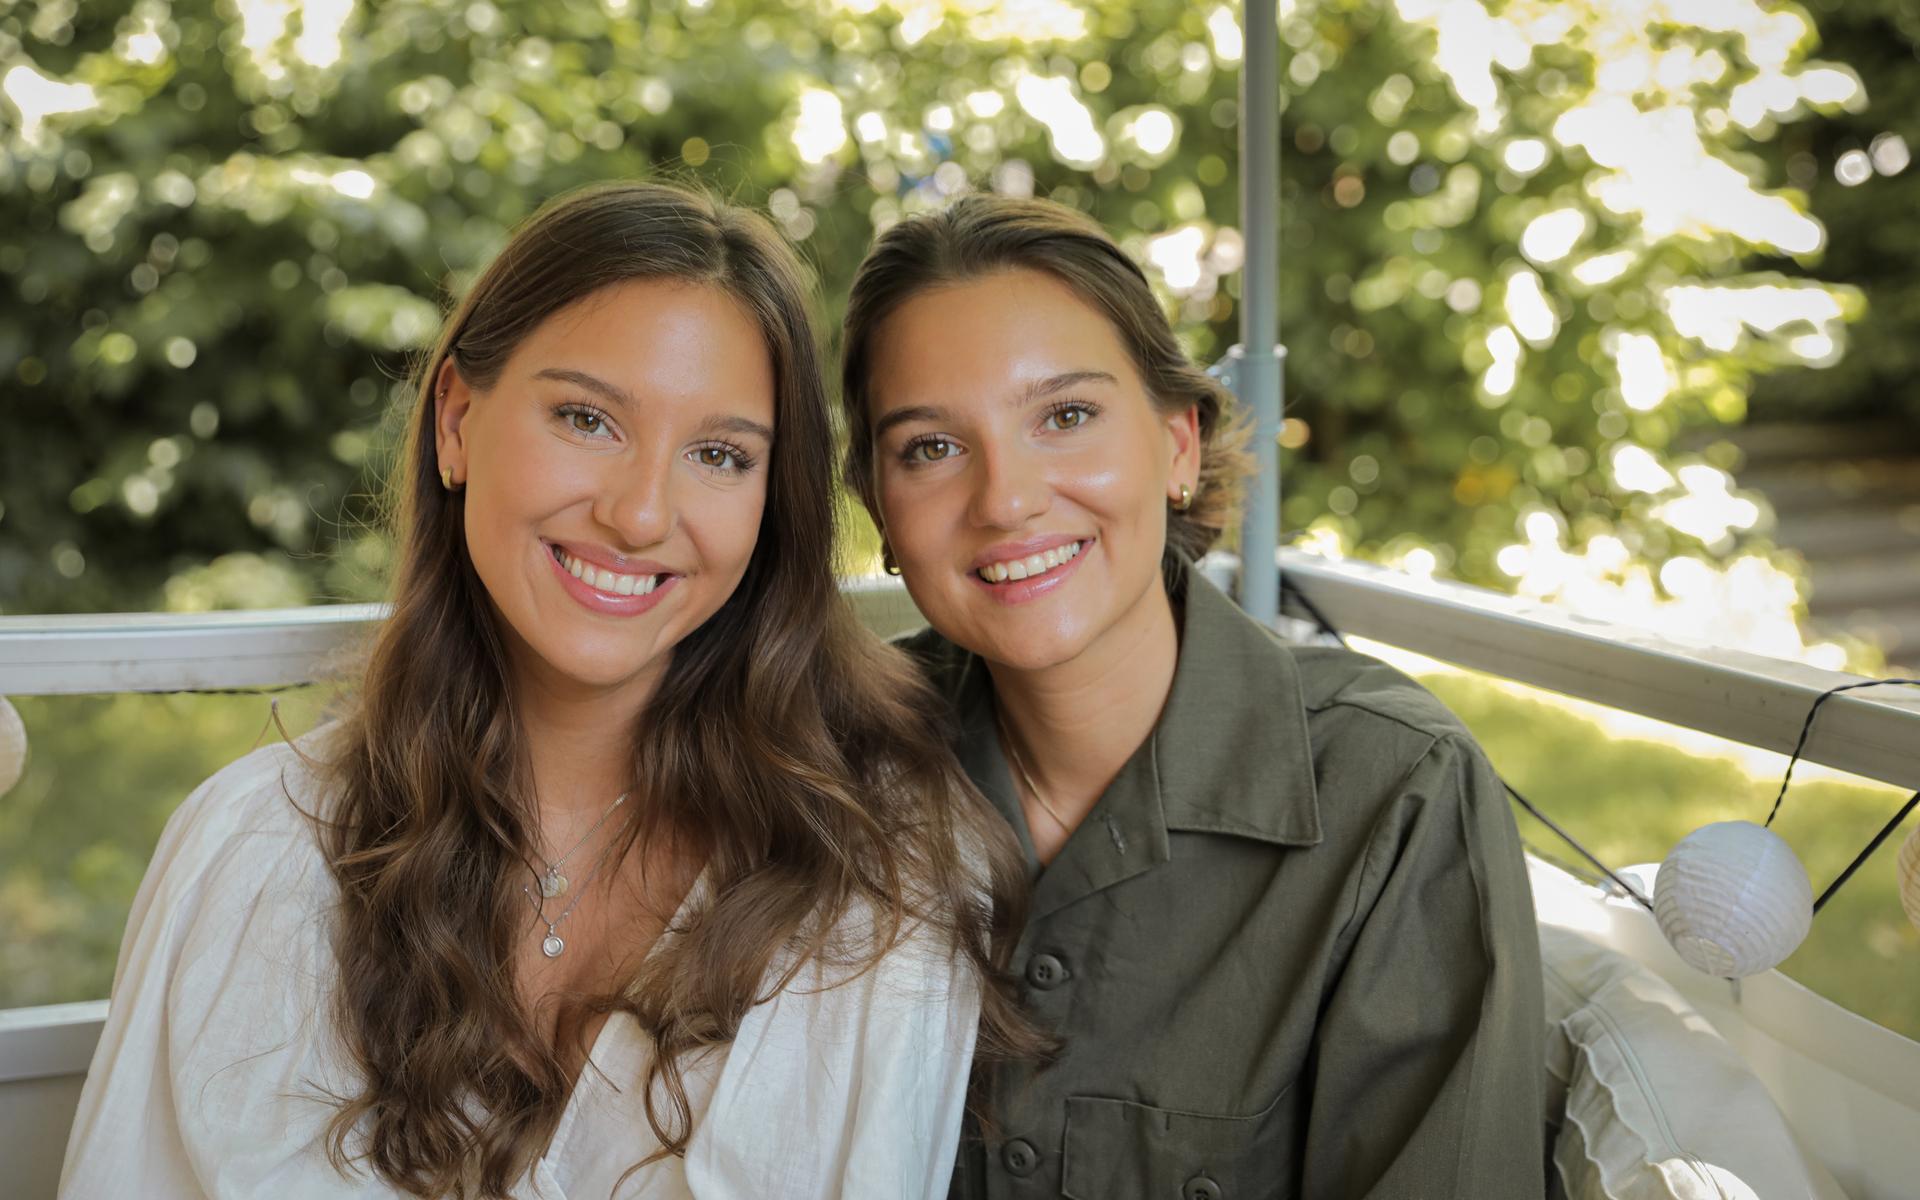 Tvillingsystrarna Emma och Amelia har gjort en kokbok, ”Vegansk matlåda”. En bok fylld med recept, baserad på  förkärlek till att ta med mat när de ska på utflykter eller jobb.